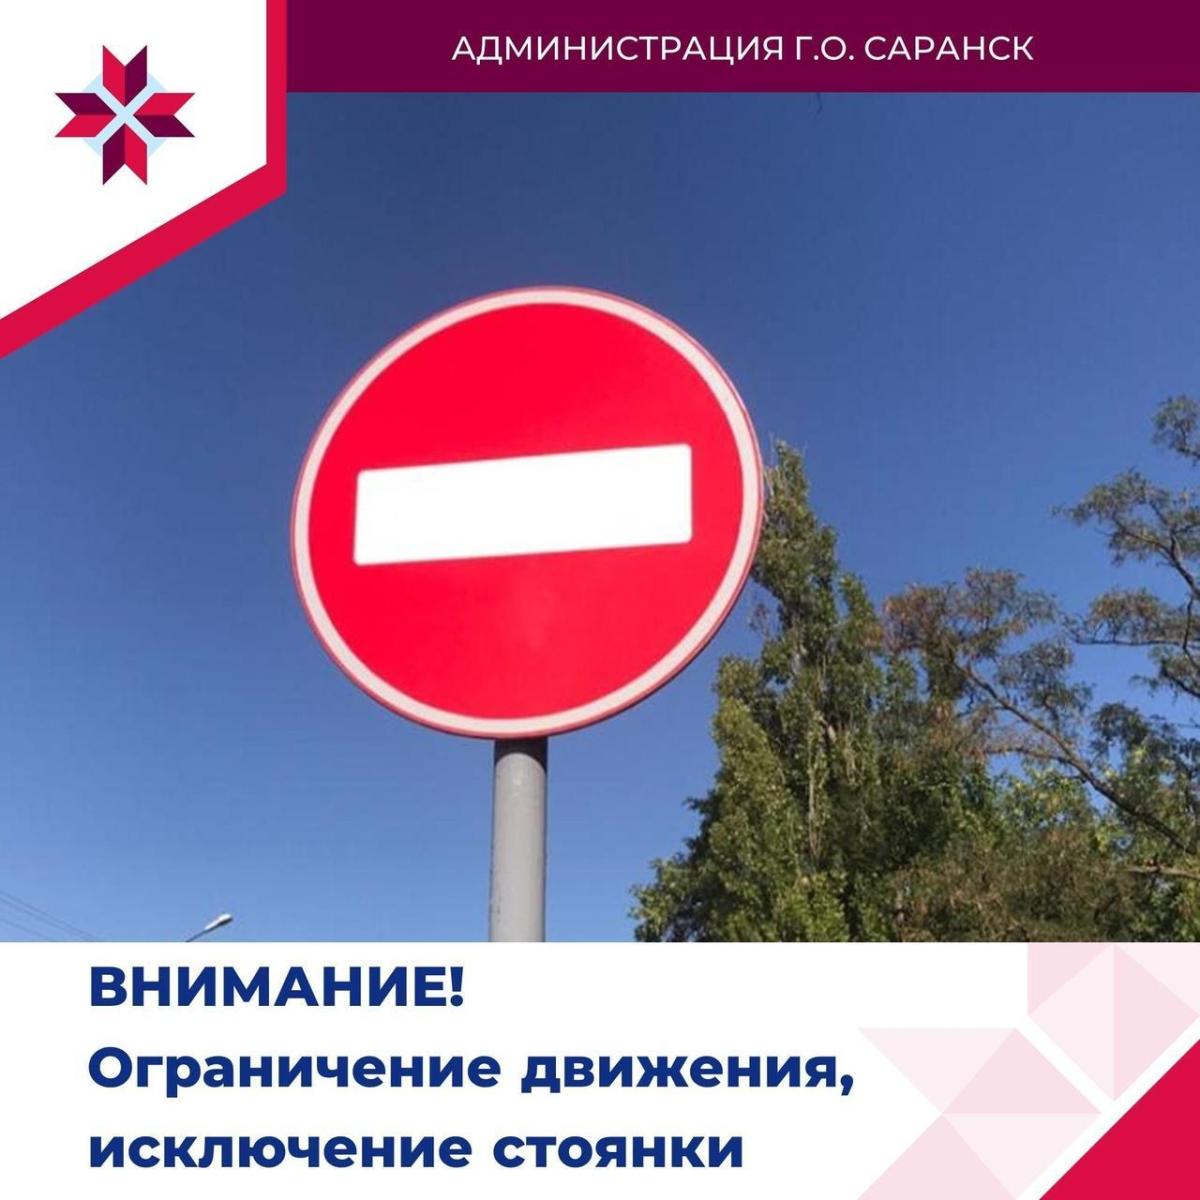 В Саранске с 10 мая до 10 июня будет ограничено движение по улице Гайдара